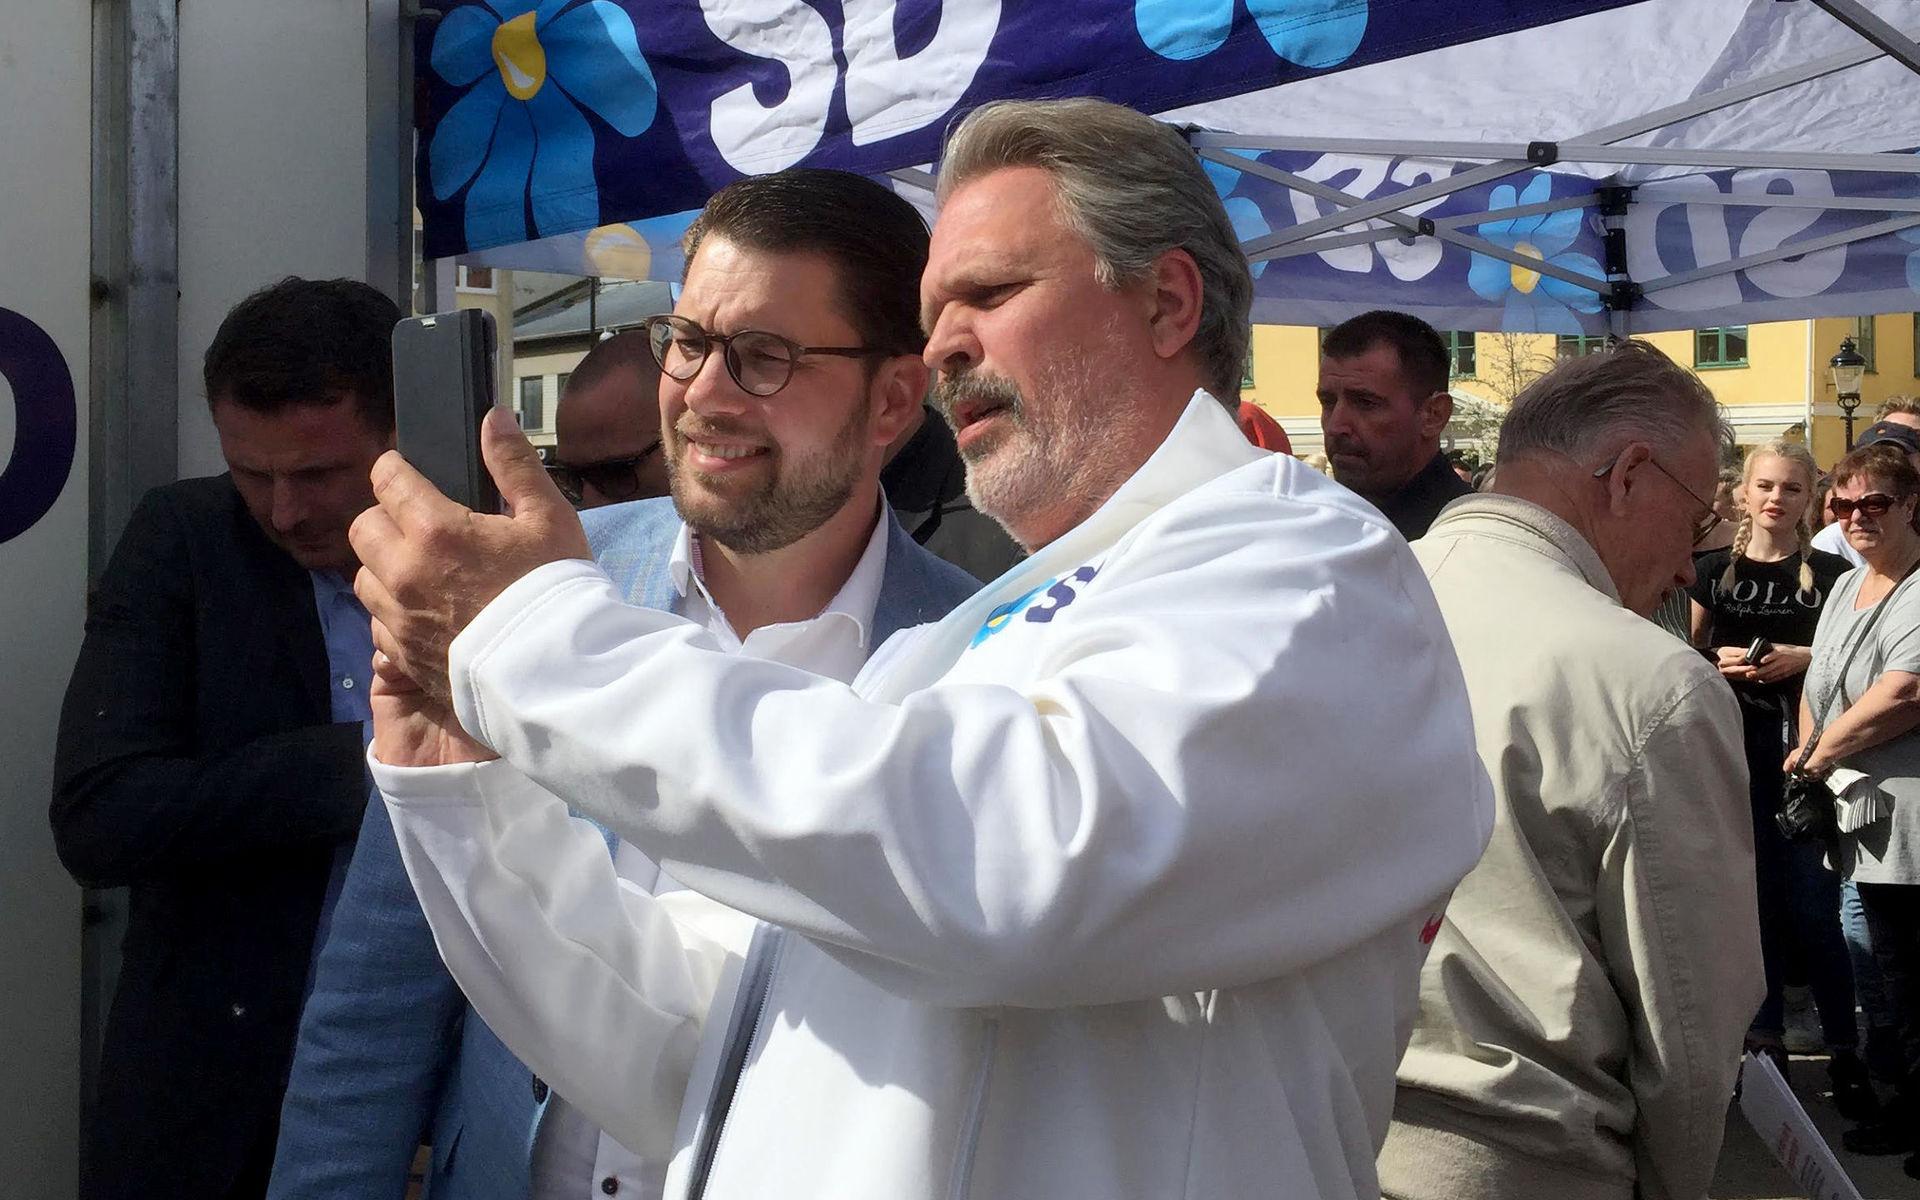 Sverigedemokraternas partiledare Jimmie Åkesson tog många selfies, som här med lokalföreträdaren Leif Frisk, men höll inget tal.